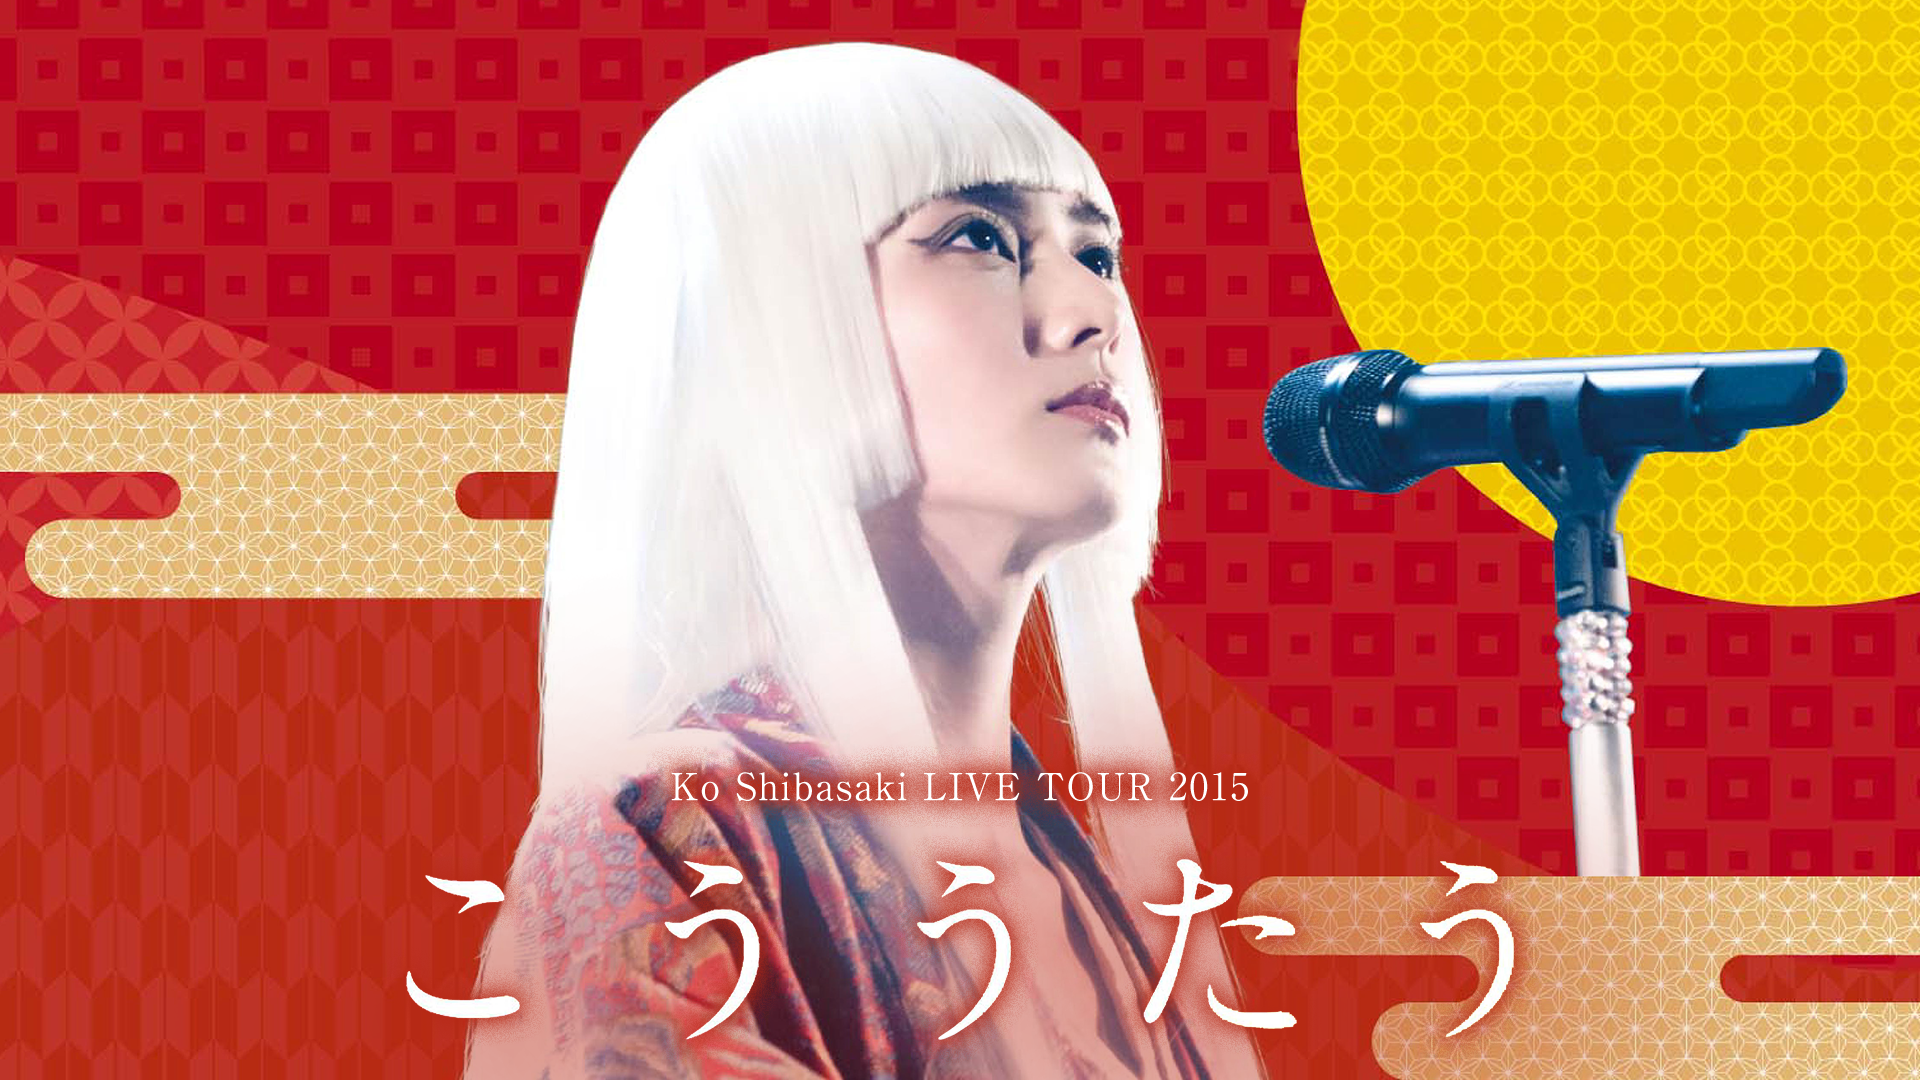 Ko Shibasaki LIVE TOUR 2015 “こううたう”(音楽・アイドル / 2015 